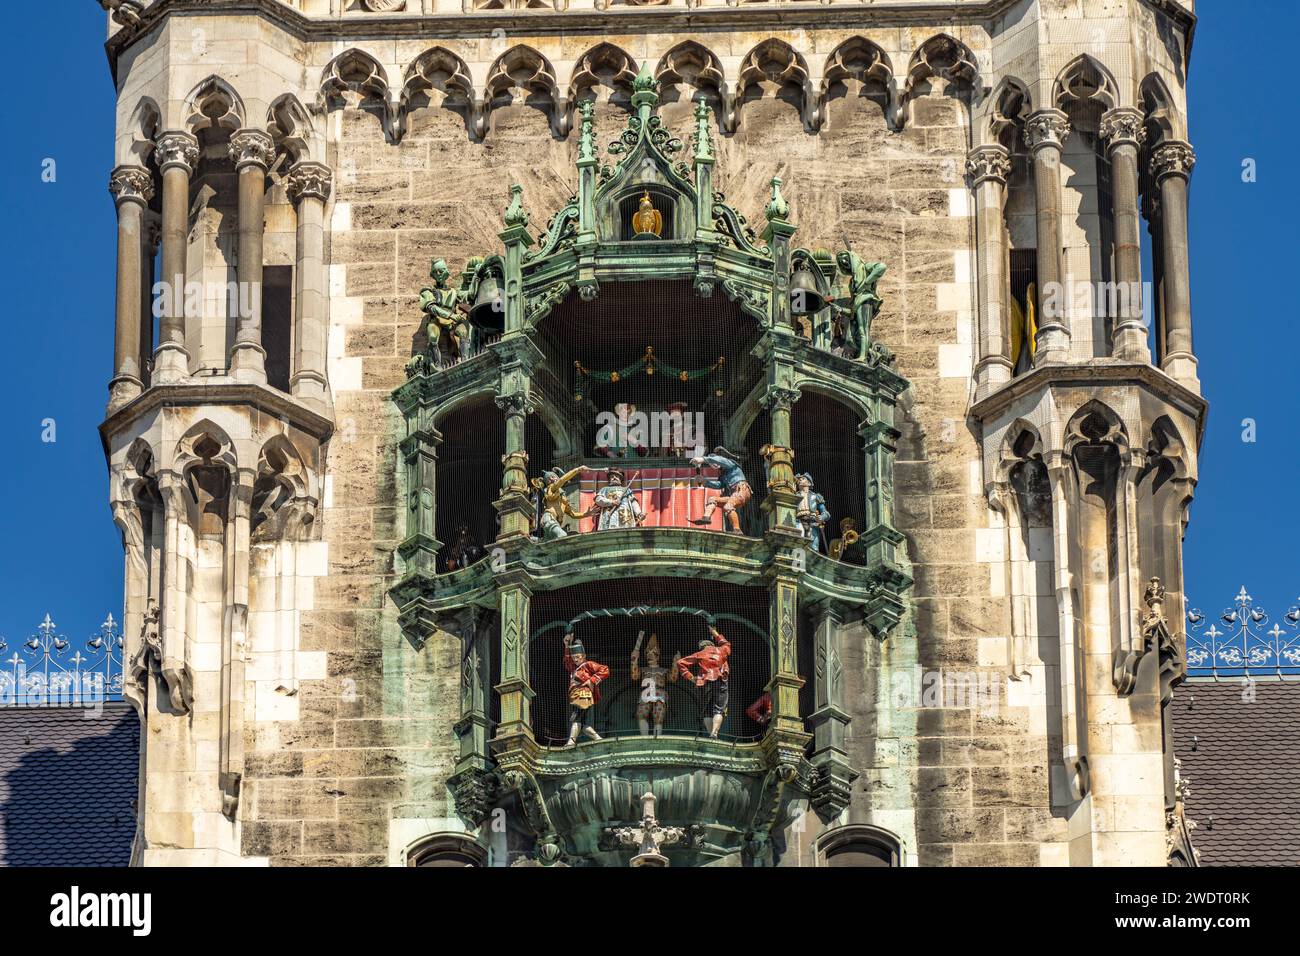 Das Glockenspiel am neuen Rathaus in Muenchen, Bayern, Deutschland  | The clock chimes of the New Town Hall in Munich, Bavaria, Germany Stock Photo